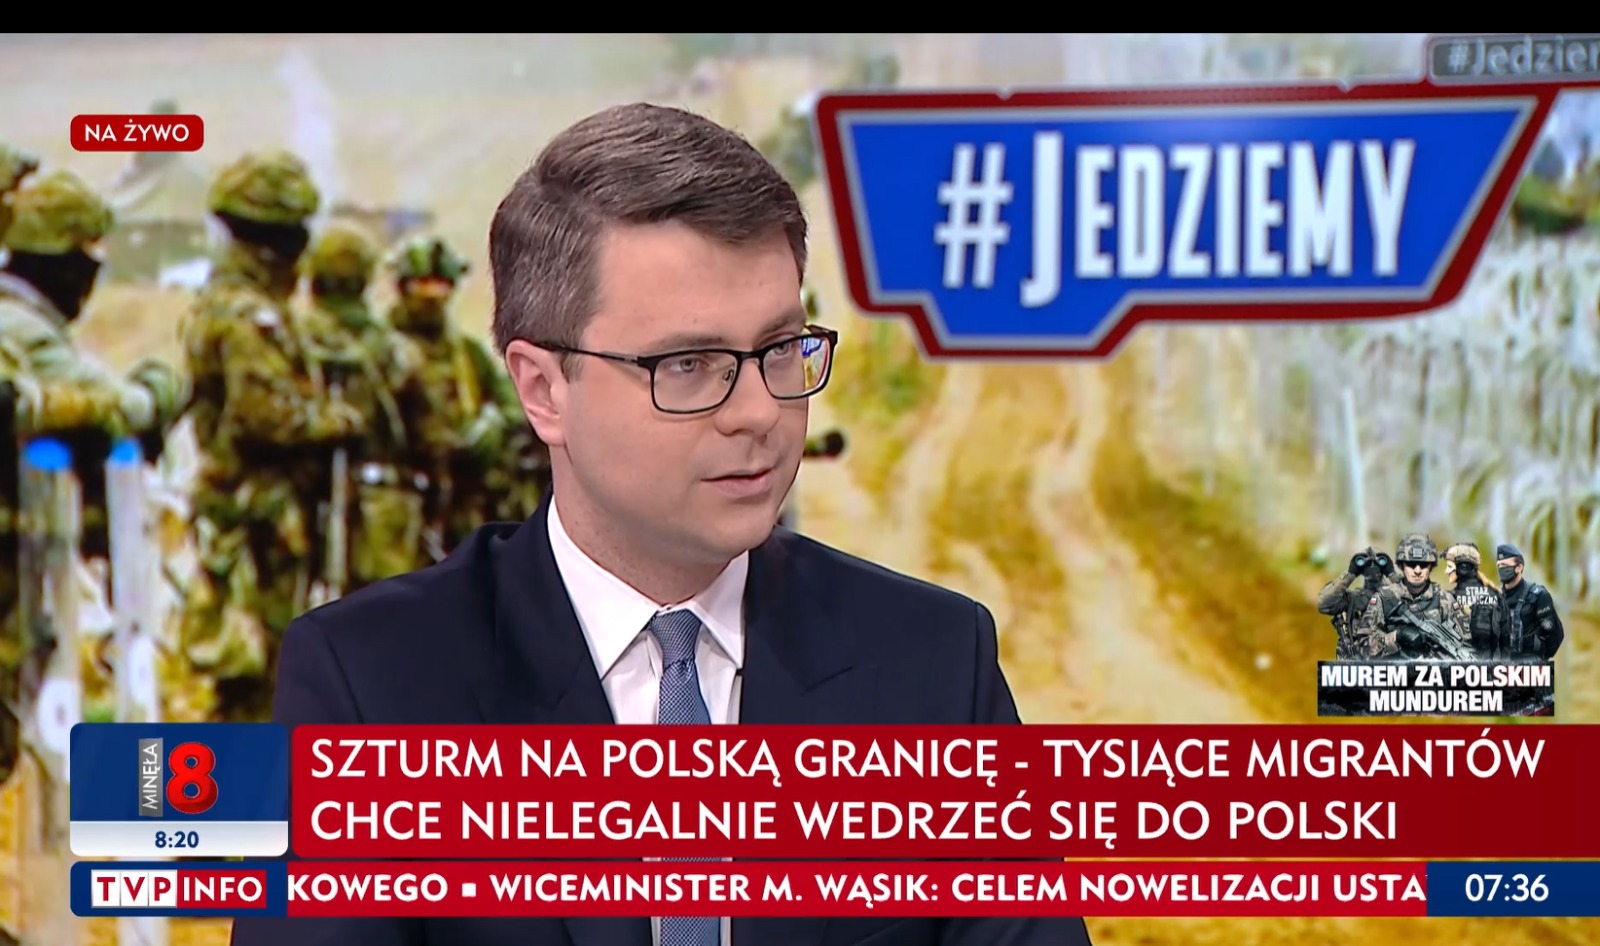 Dziś rzecznik rządu Piotr Müller gościł w porannym programie Jedziemy w tvp.info.